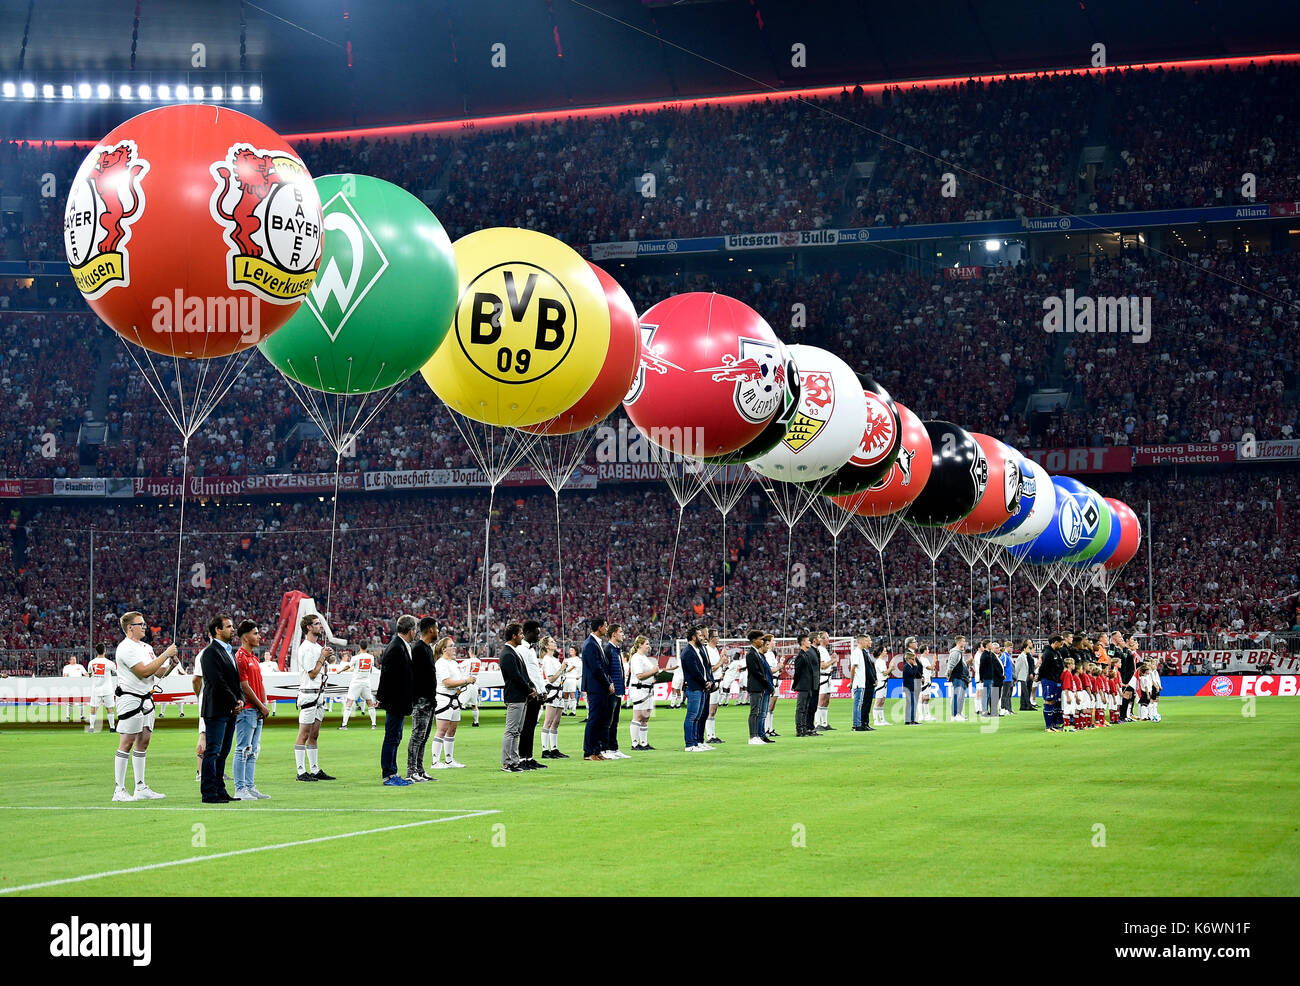 Cérémonie d'ouverture de la Bundesliga, Allianz Arena, Bavière, Allemagne Banque D'Images